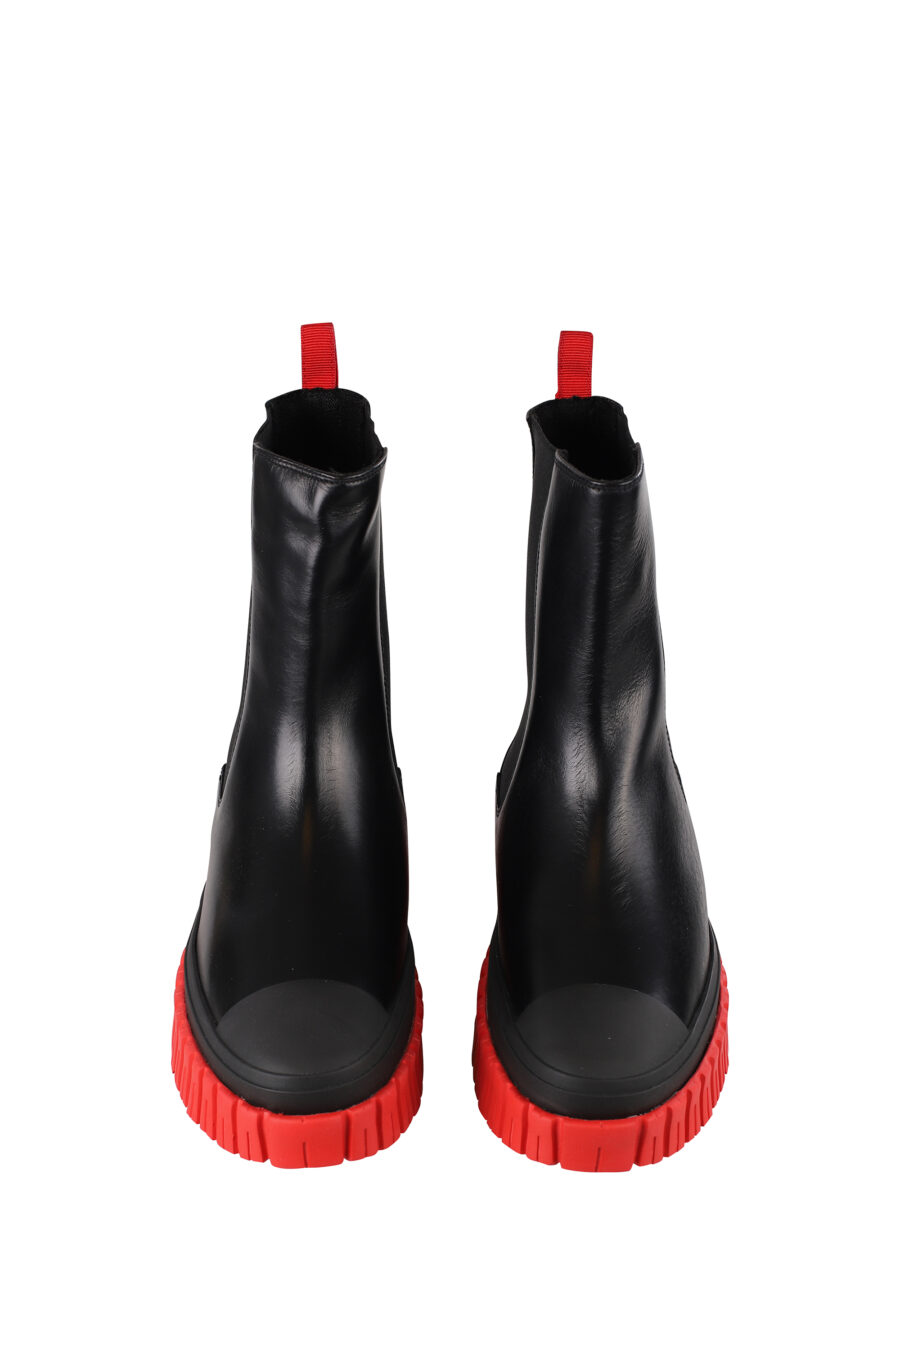 Schwarze Stiefelette mit roter Sohle und weißem Mini-Logo - IMG 1223